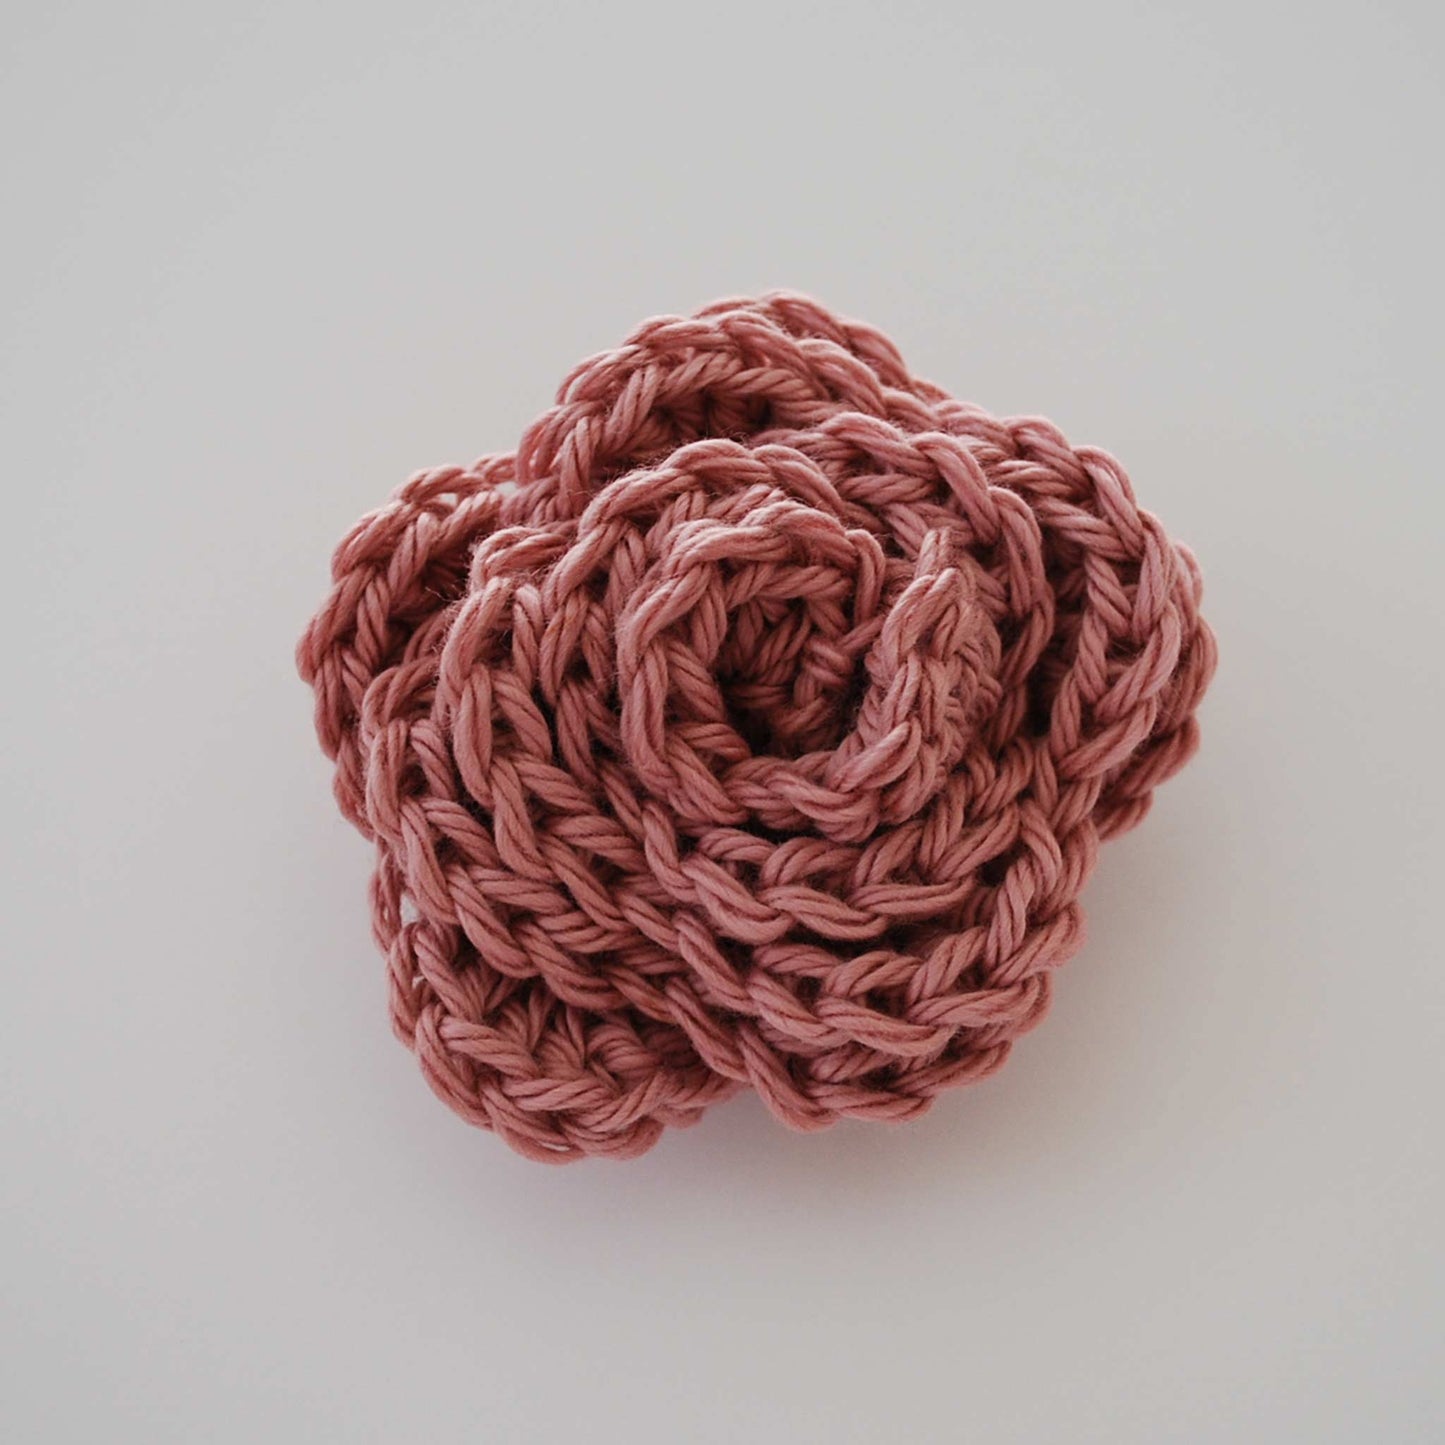 Beginner Crochet Rose PDF